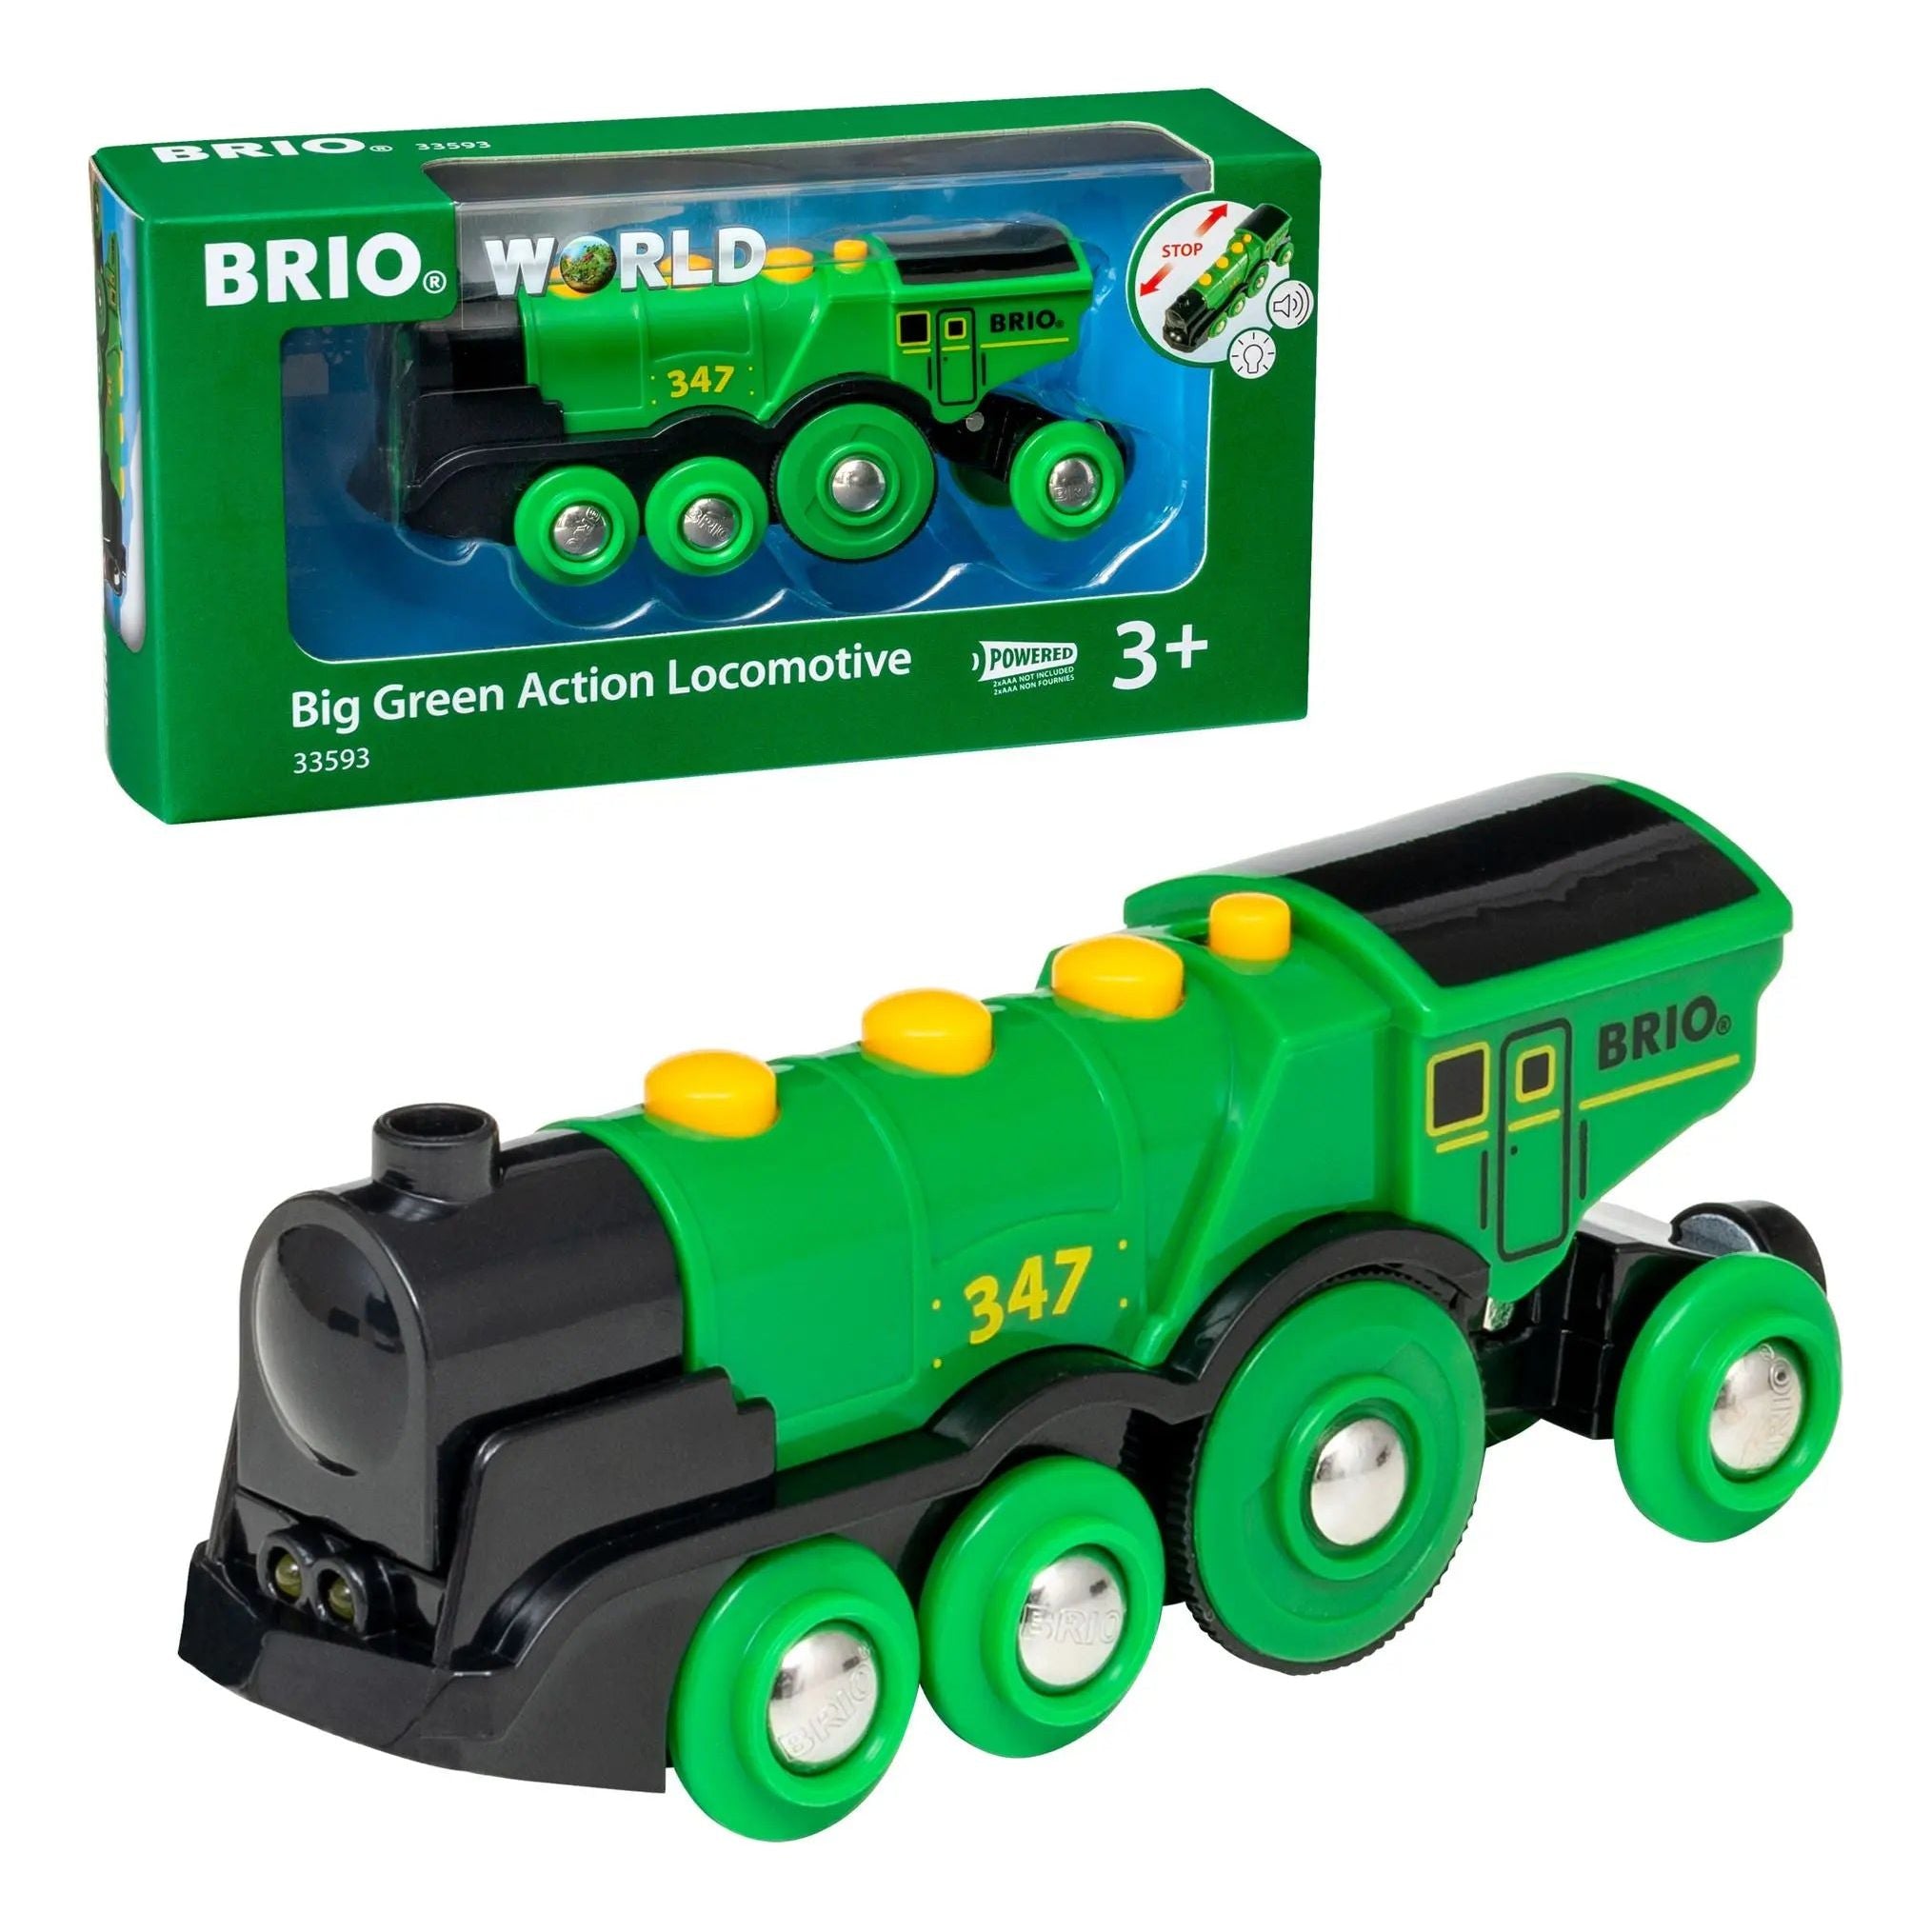 Brio World Big Green Action Locomotive